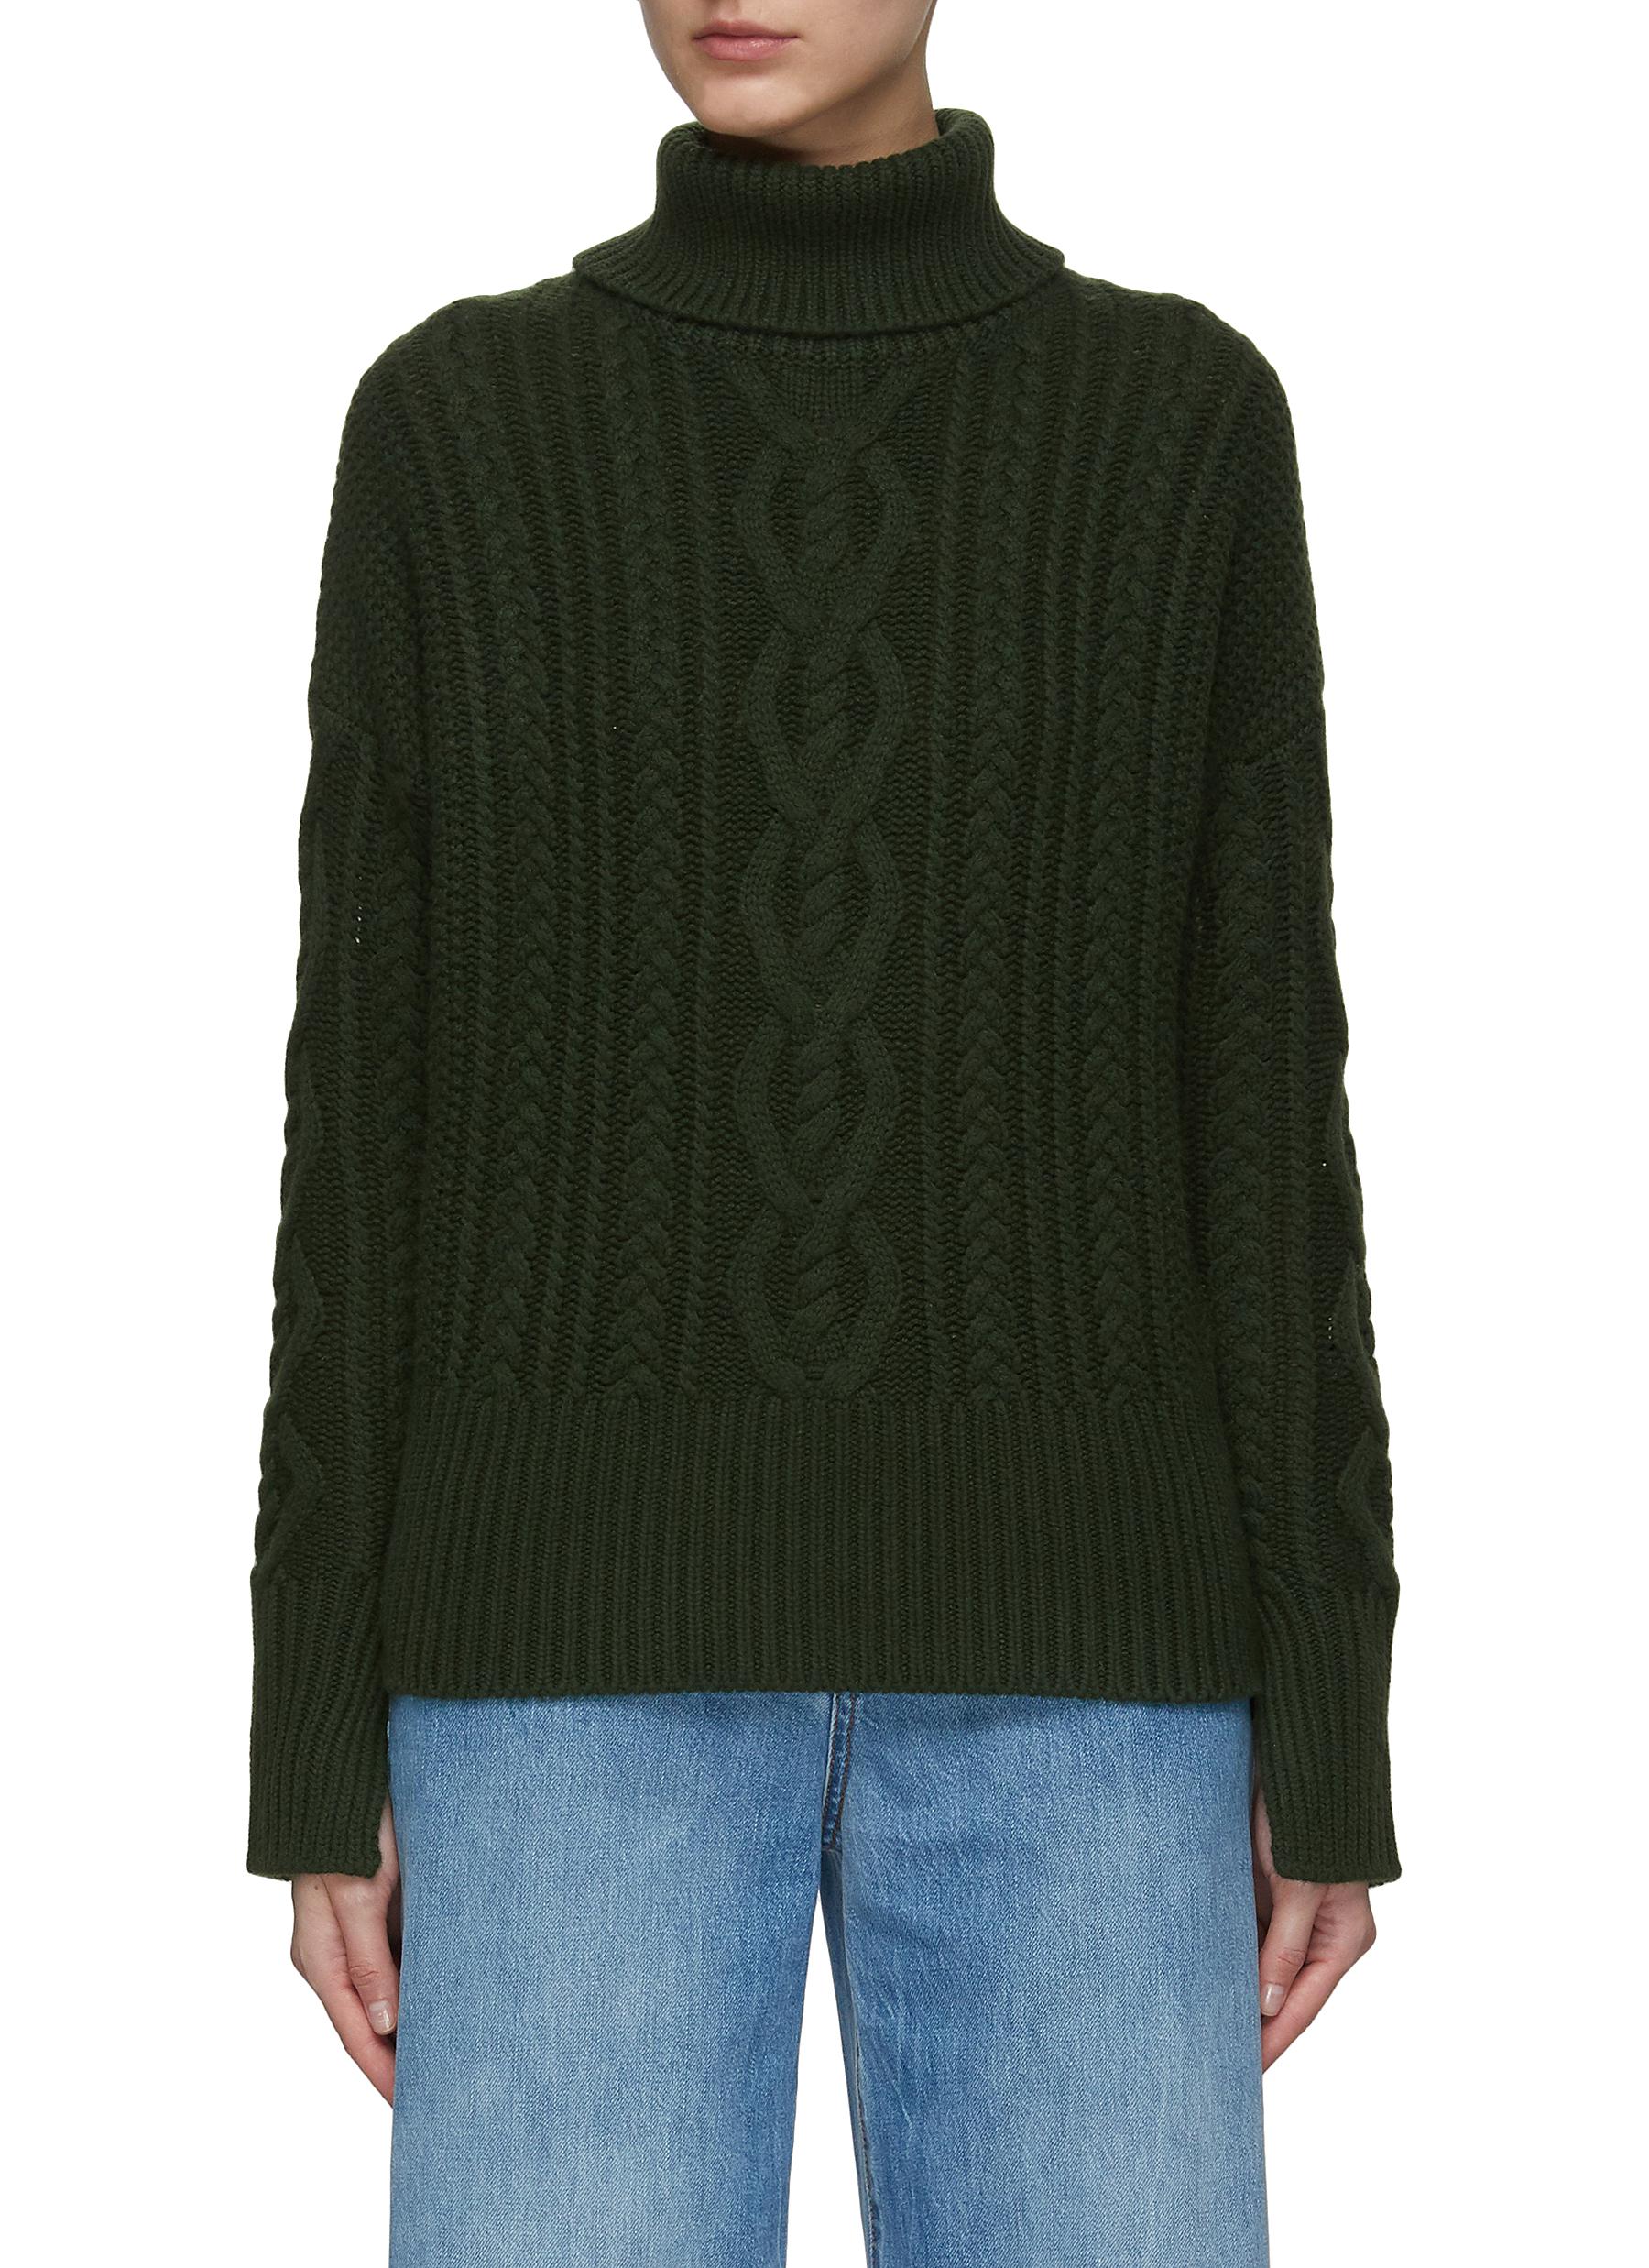 Dreyden Split Neck Multi Textured Cashmere Knit Aran Sweater In Green